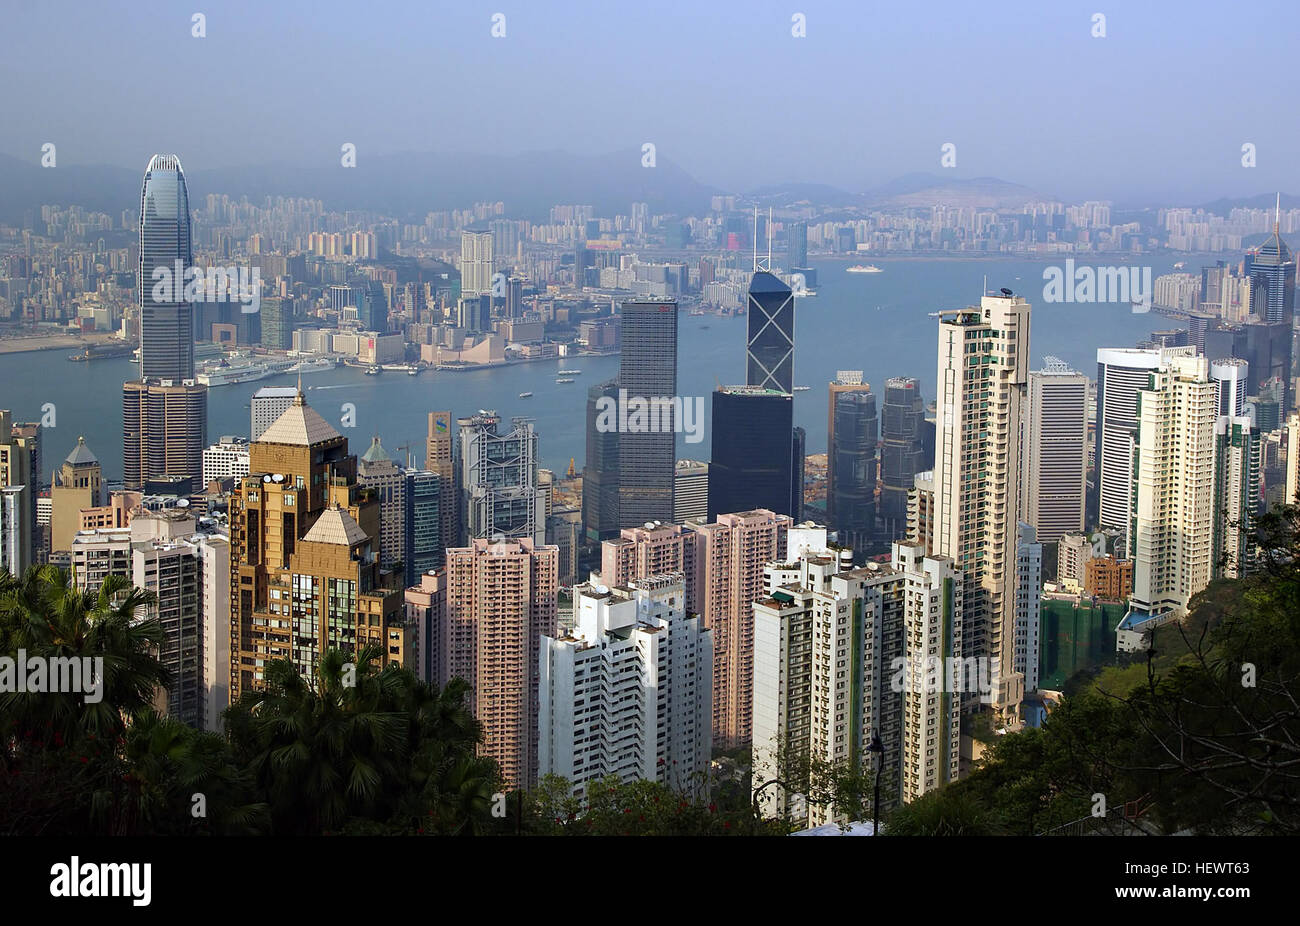 Wenn es nur eine Sache, die Sie tun können, in Hongkong gibt, gehen Sie zu The Peak. Haben Sie viele Dinge zu tun, noch gehen Sie zu The Peak. Der höchste Punkt auf Hong Kong Island, dies exklusivsten Viertel der Stadt wurde seit den kolonialen Zeiten – damals war es die kühlere Luft, die die reichen und berühmten angezogen; in der Post-Klimaanlage-Ära halten sie den Blick auf eine der spektakulärsten Städte der Welt kommen. Stockfoto